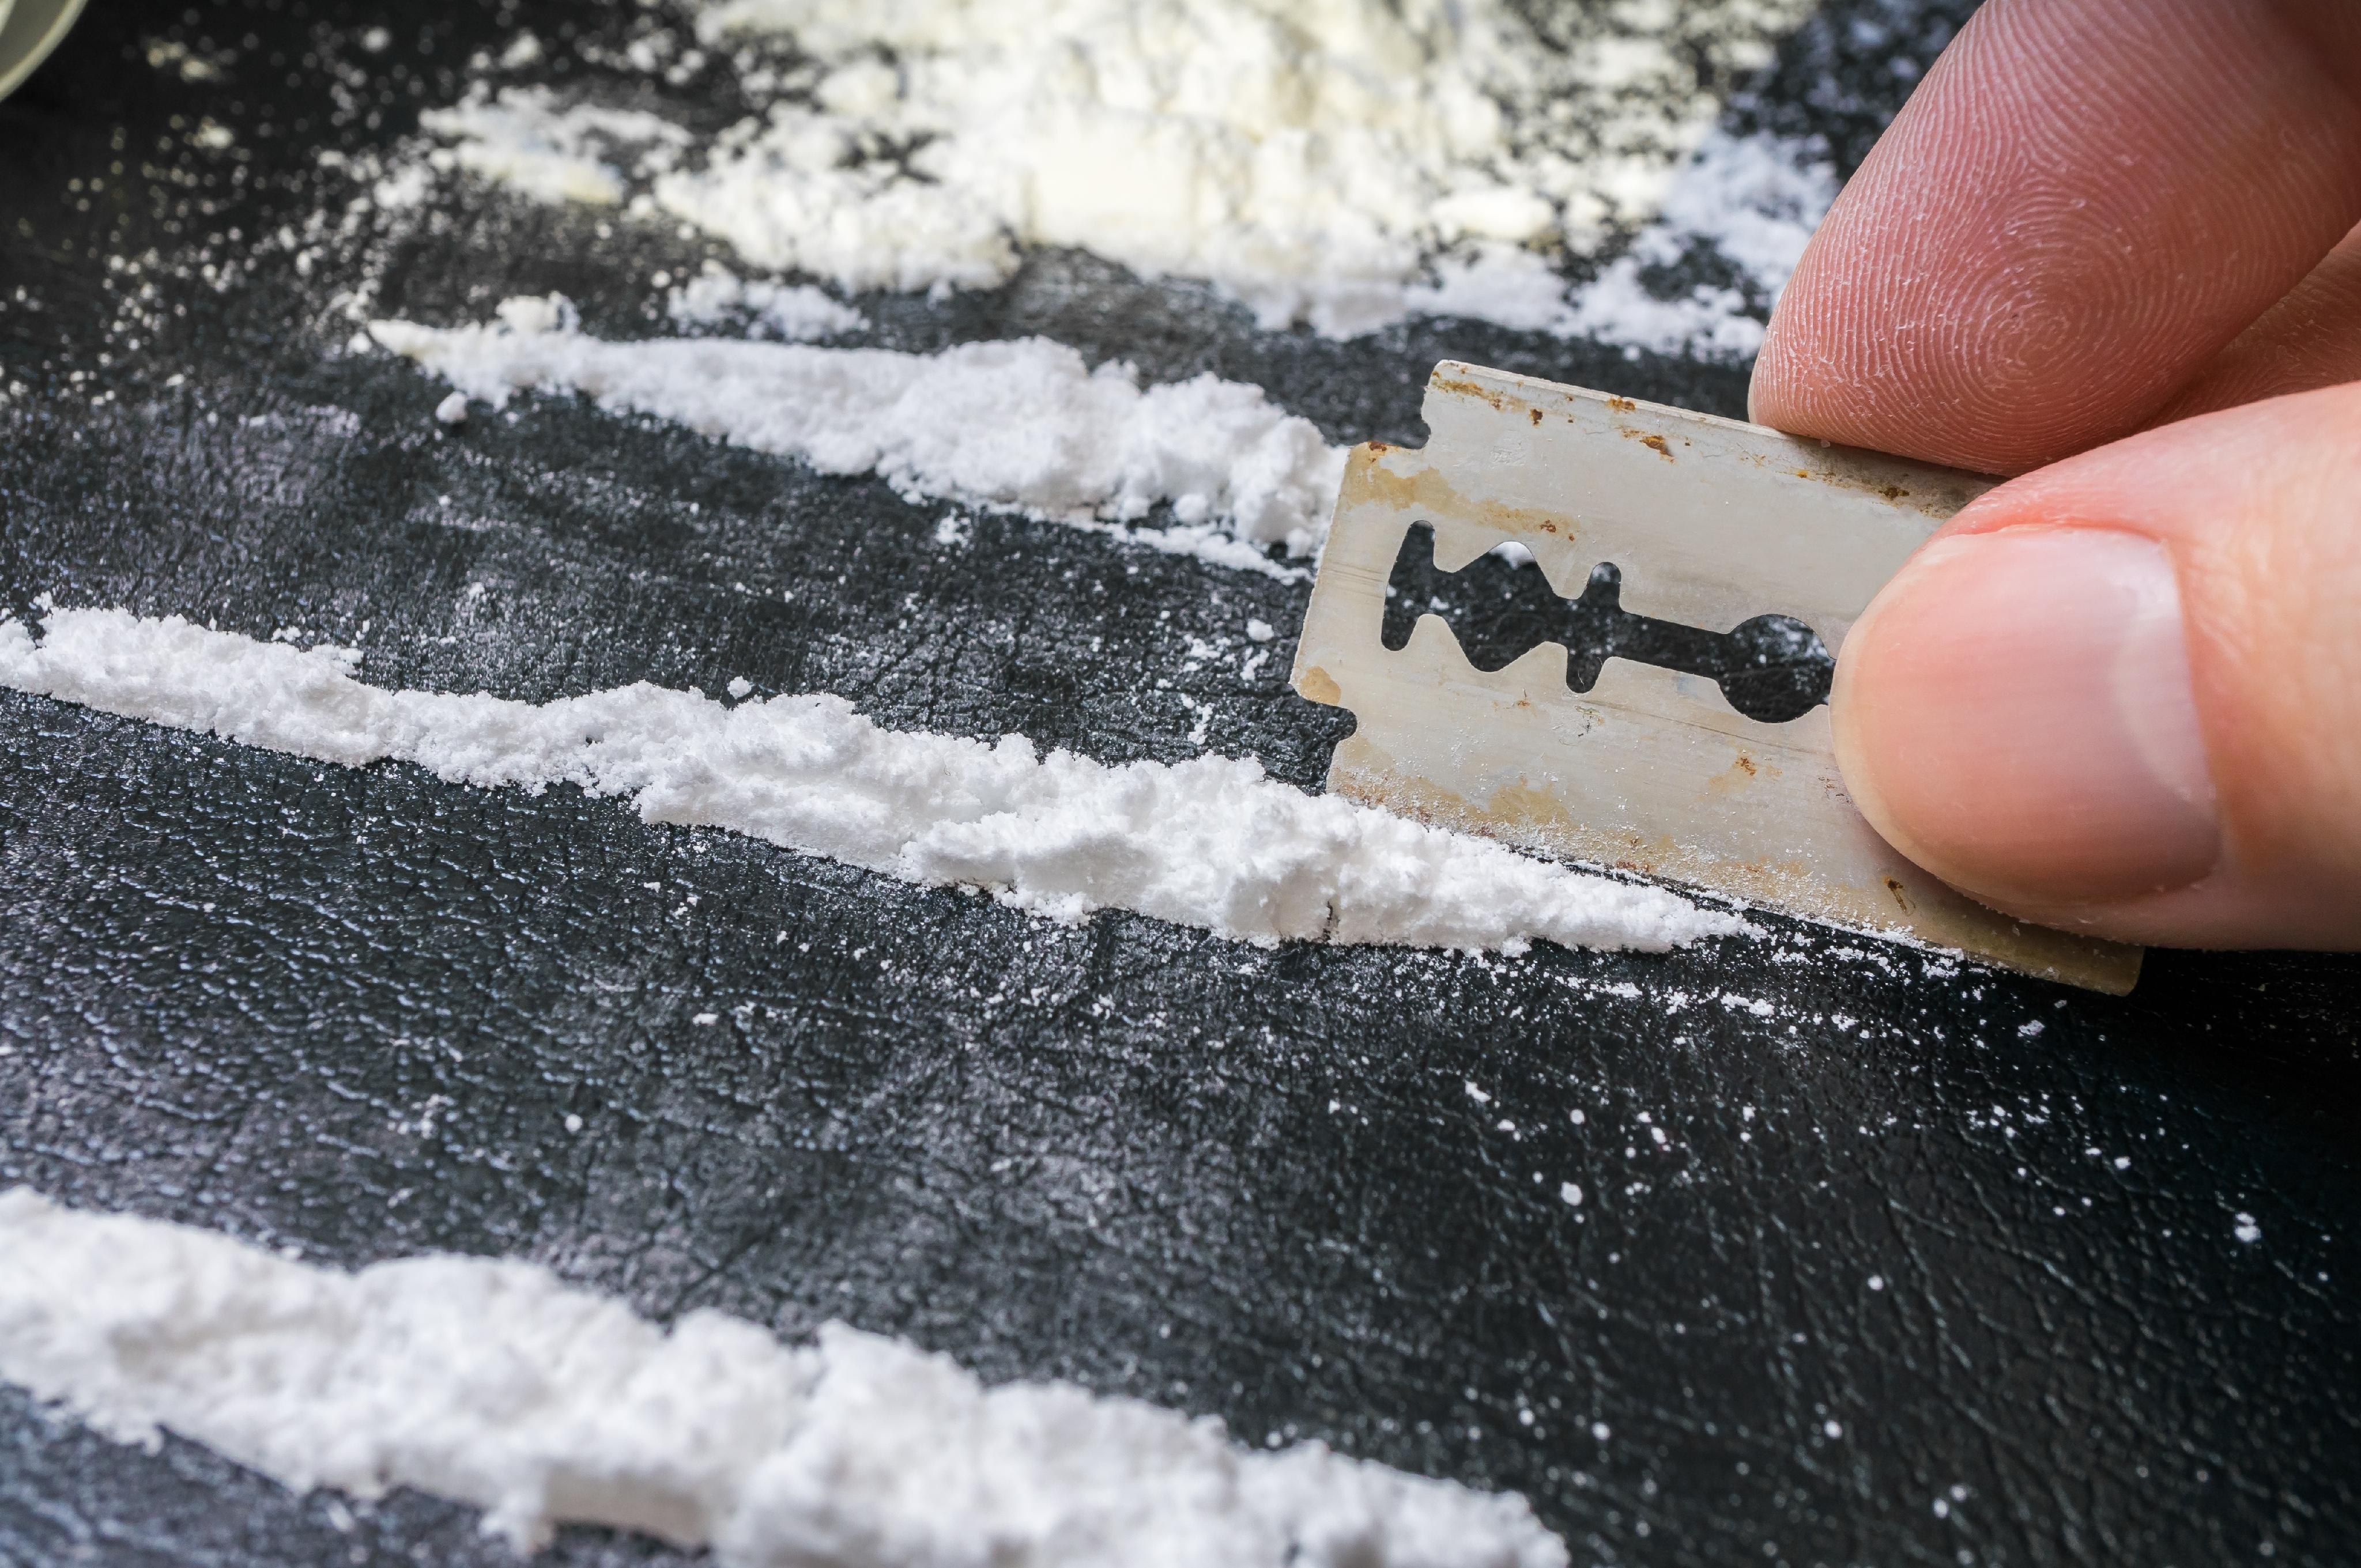 Cocaína U Otros Estupefacientes En Línea. Adicto Con Billete De